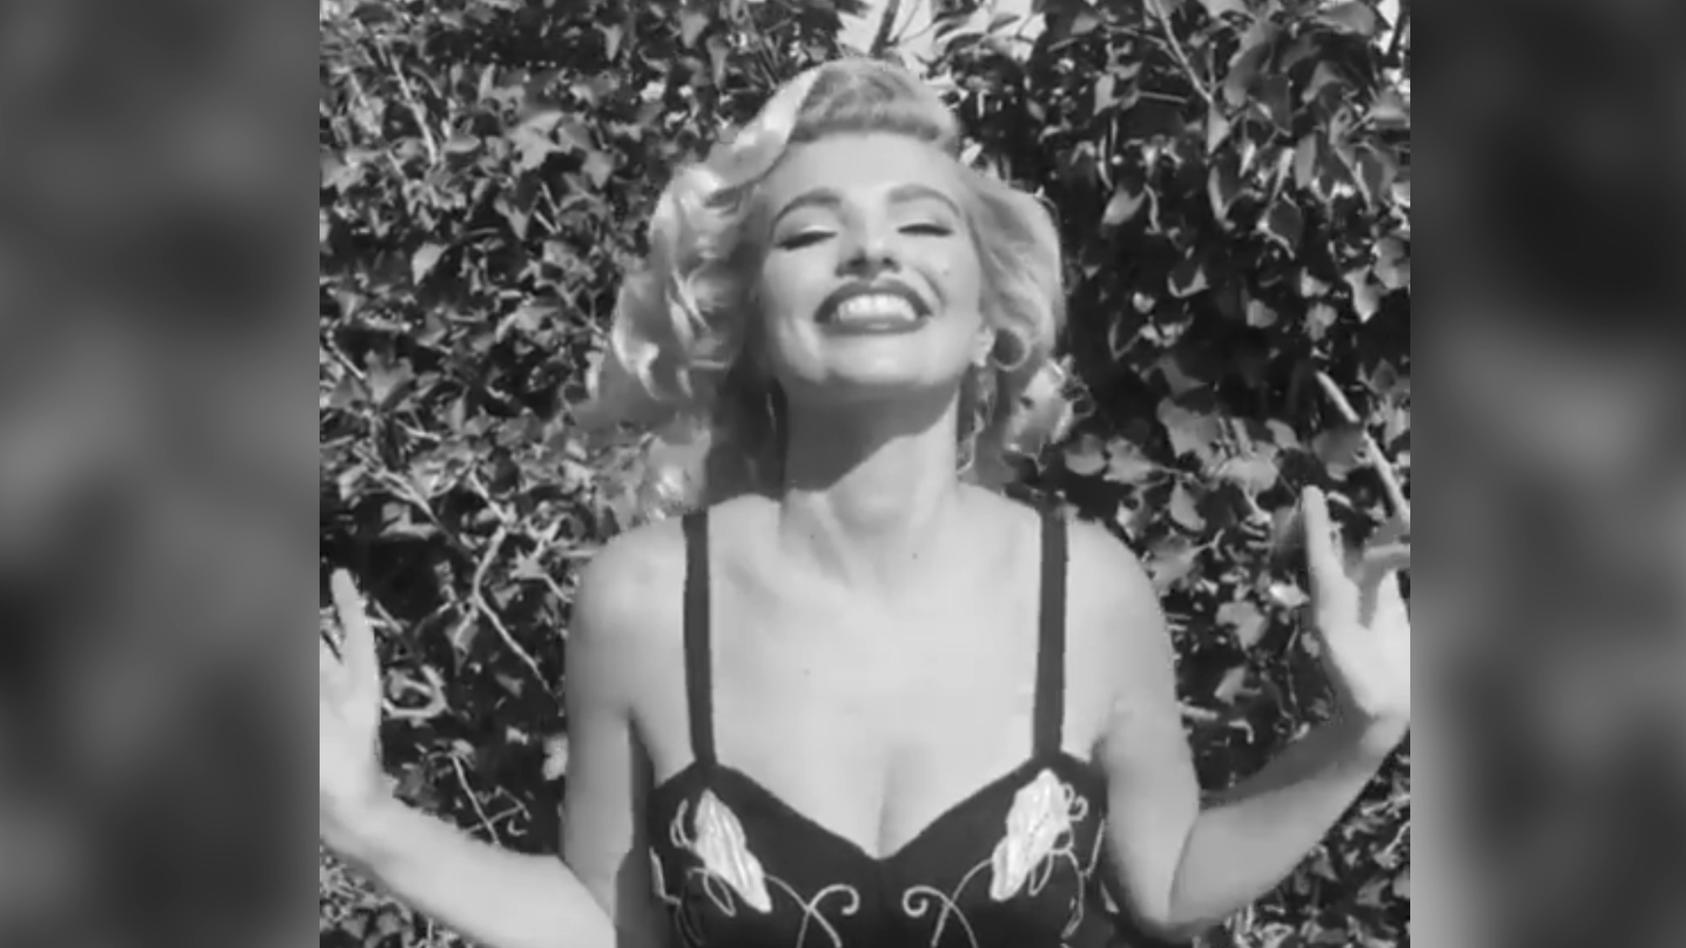 Das sagt Sarina Nowak zur Marilyn-Ähnlichkeit Verblüffende Ähnlichkeit